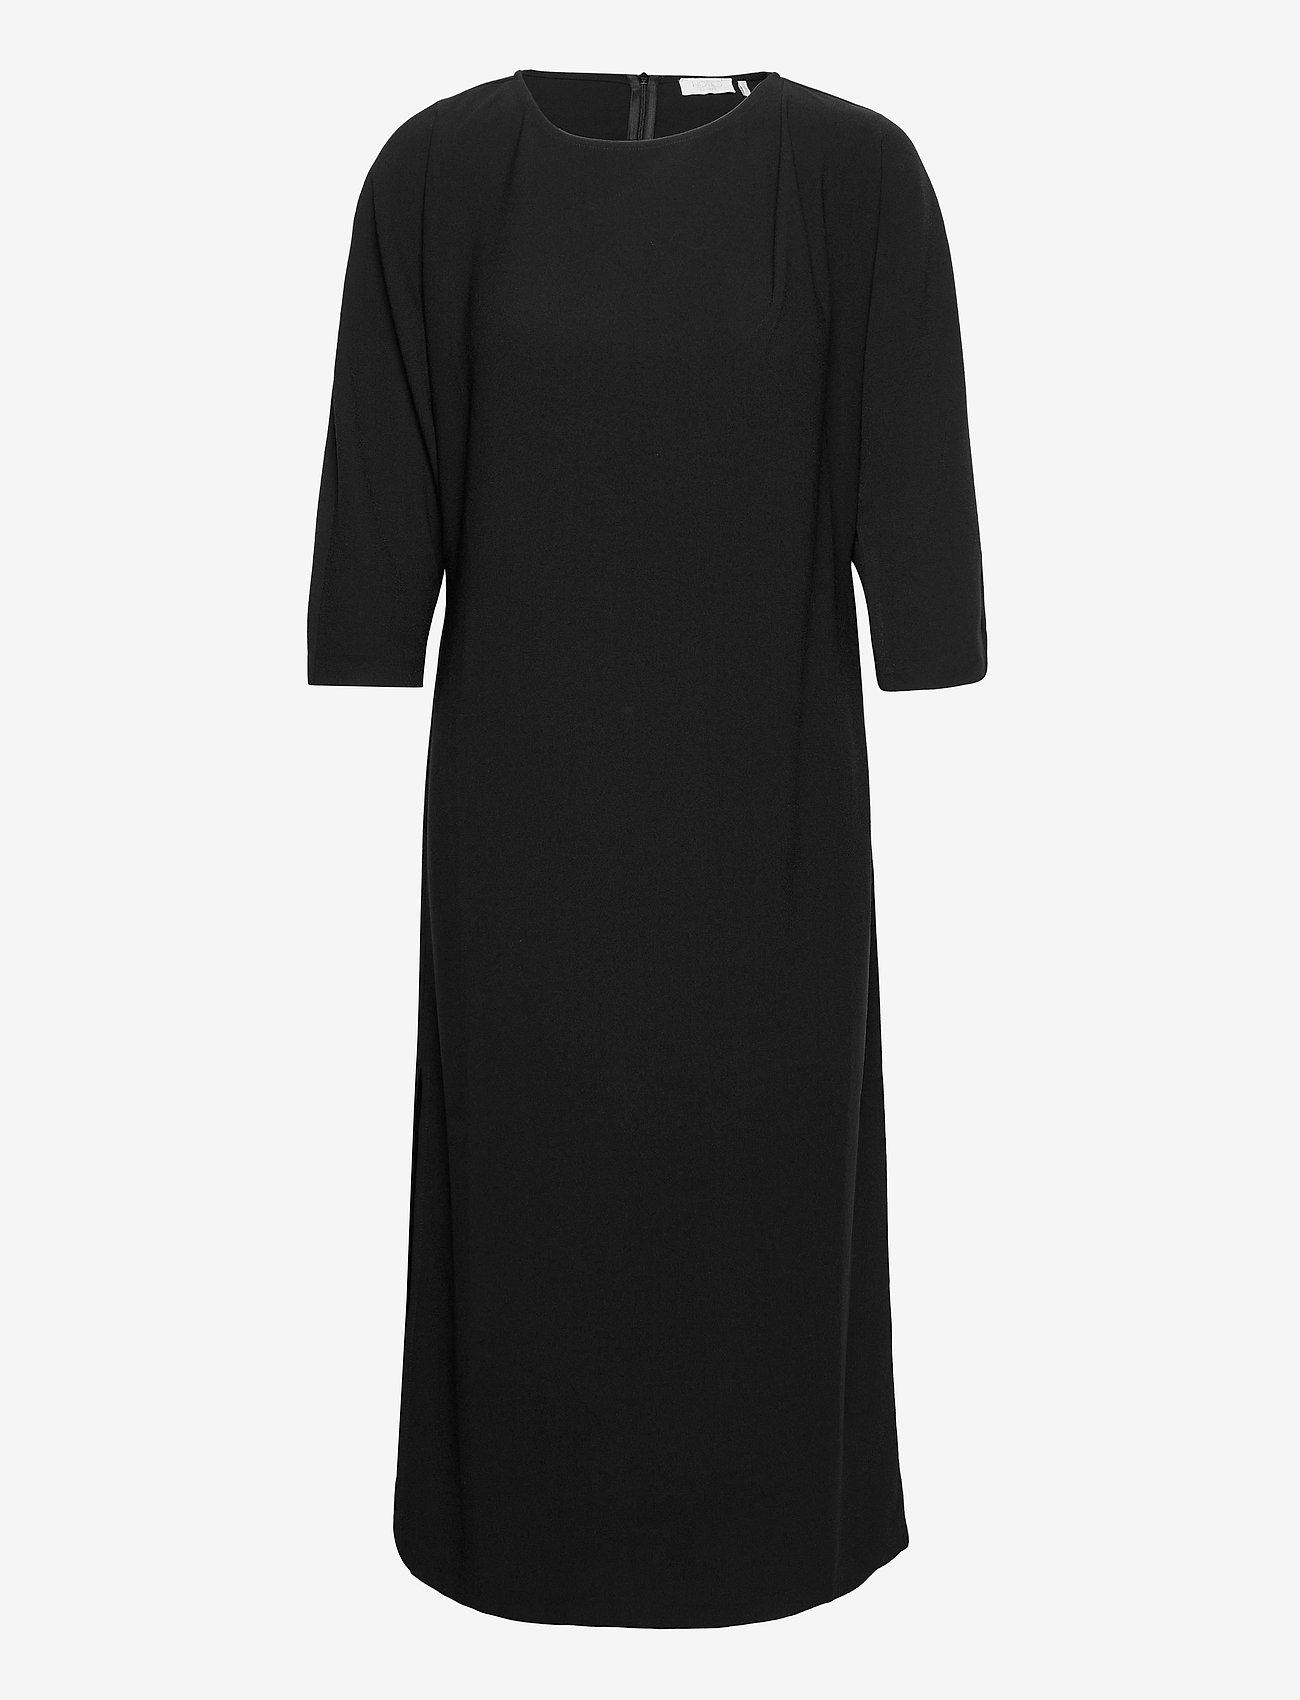 Notes du Nord - Oliana Dress - midi kjoler - noir - 0